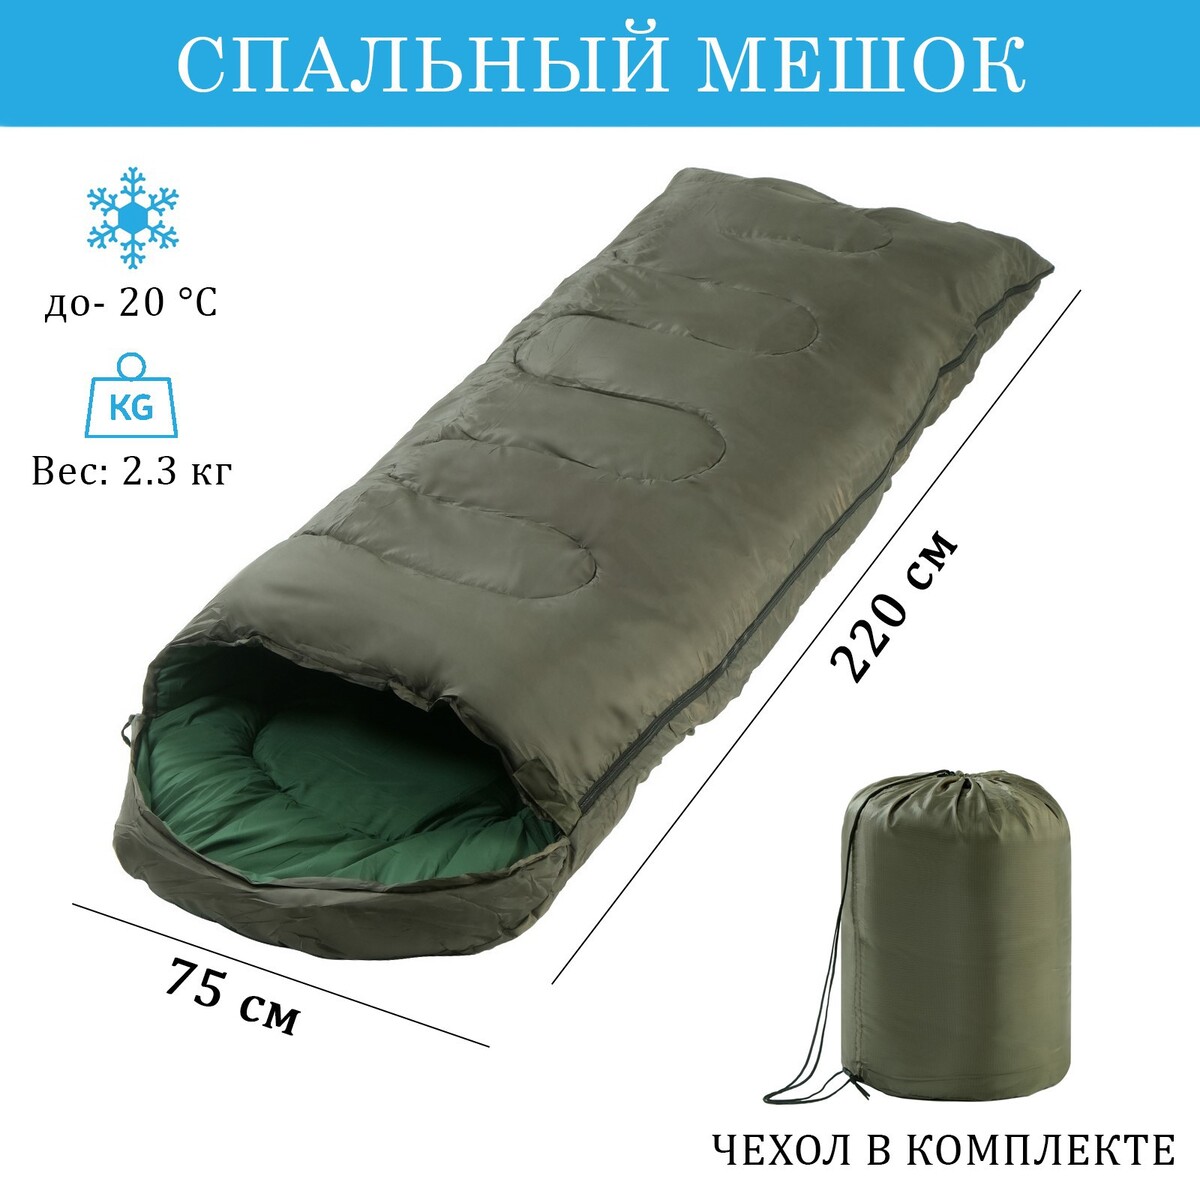 Спальный мешок, туристический, 220 х 75 см, до -20 градусов, 700 г/м2, цвет хвои спальный мешок туристический atemi quilt 300rn 300 г м2 3 с правый